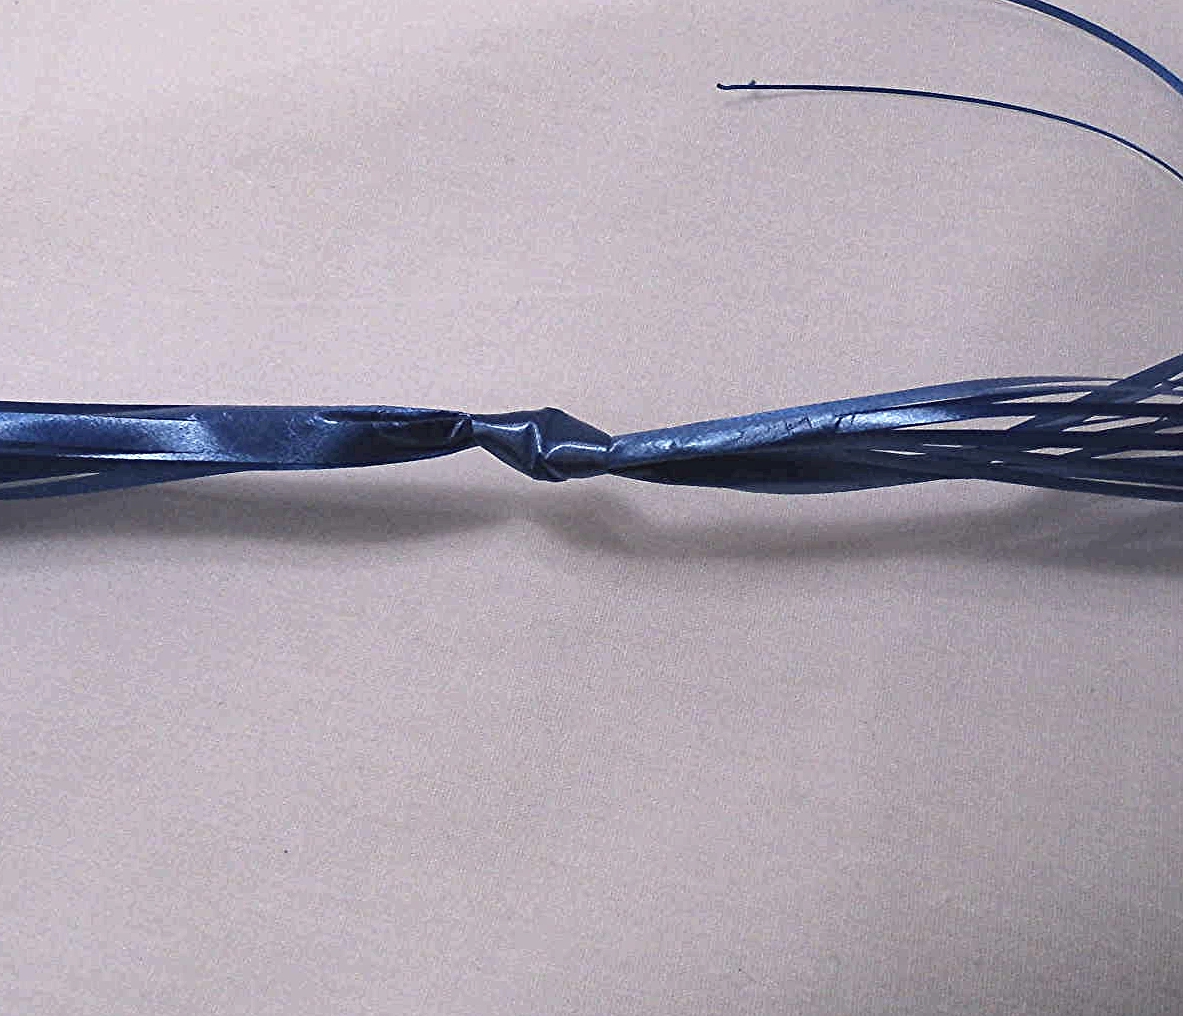 McPACK curling ribbon shredder